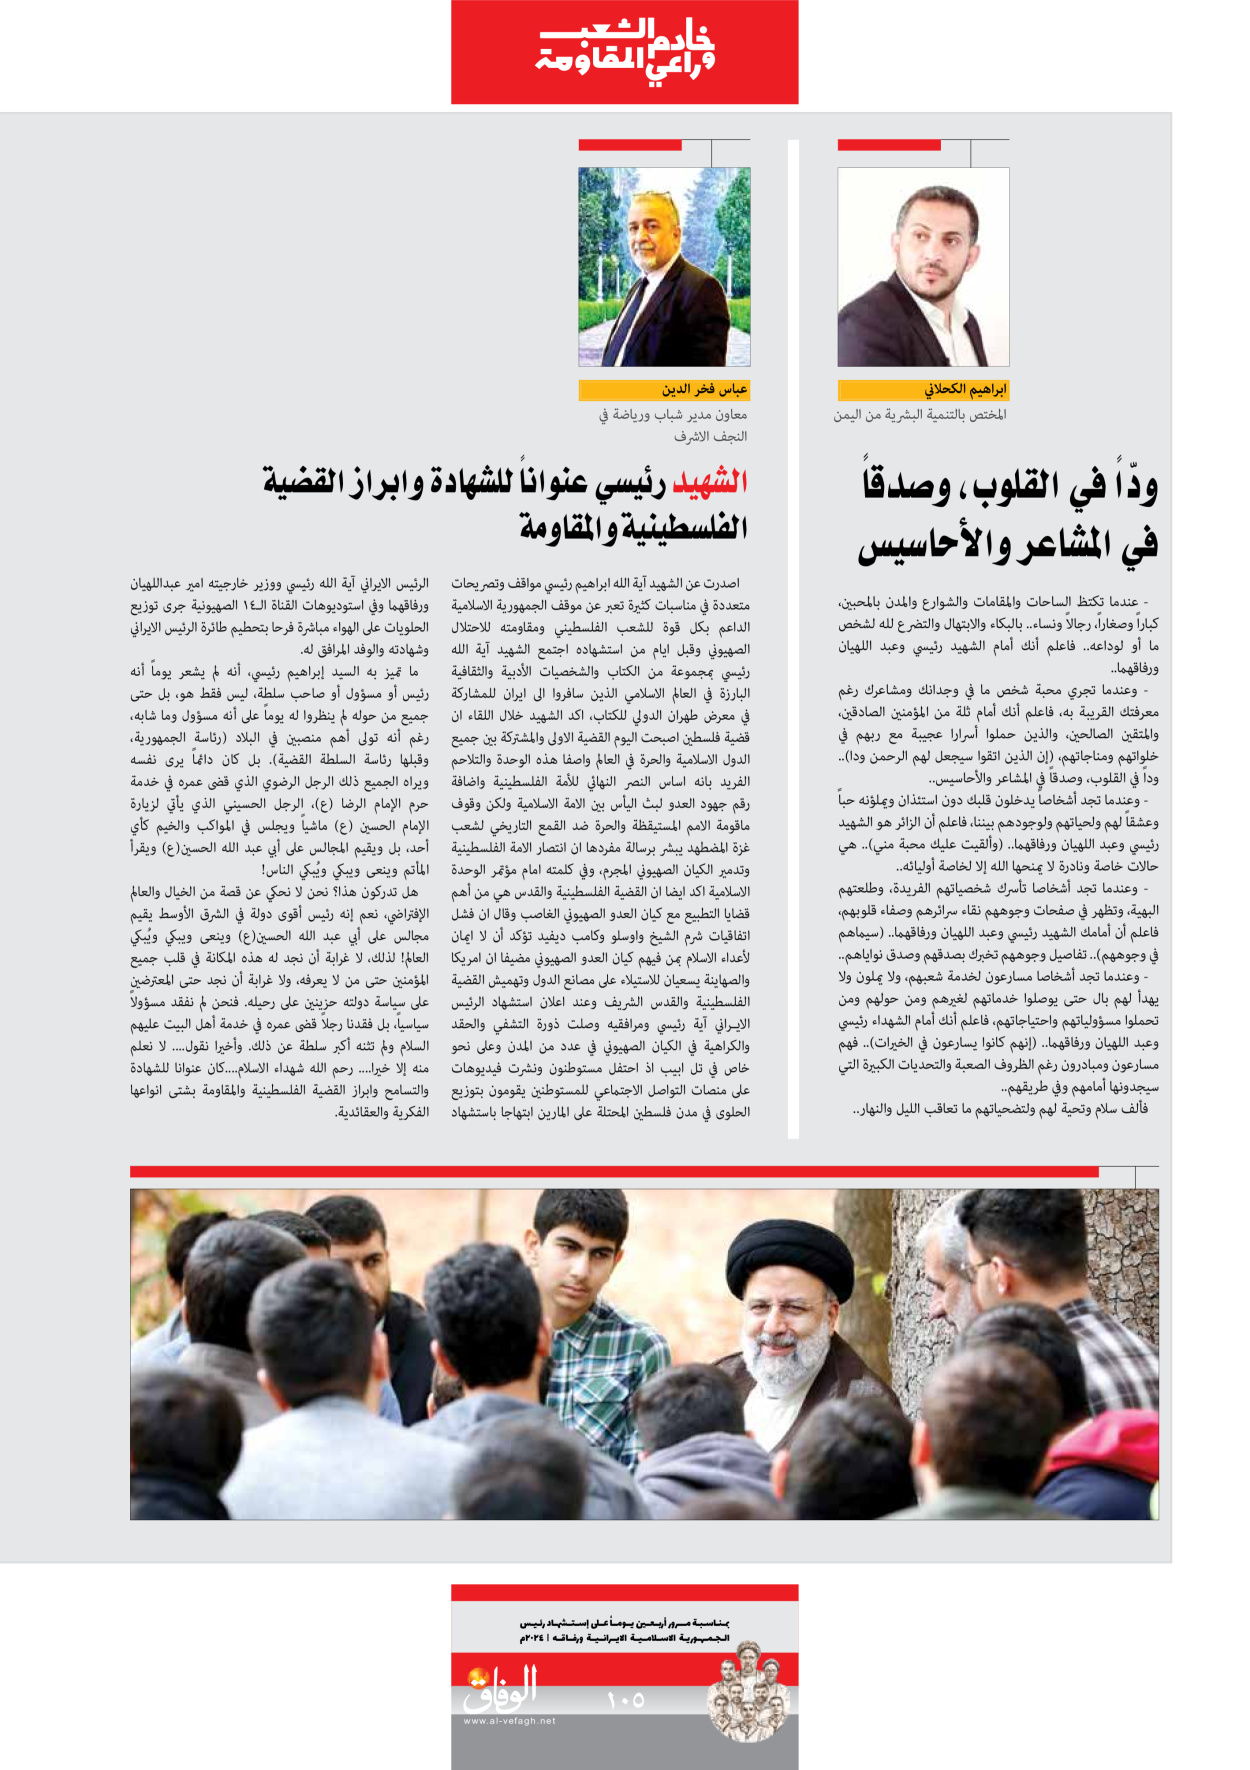 صحیفة ایران الدولیة الوفاق - ملحق ویژه نامه چهلم شهید رییسی - ٢٩ يونيو ٢٠٢٤ - الصفحة ۱۰٤